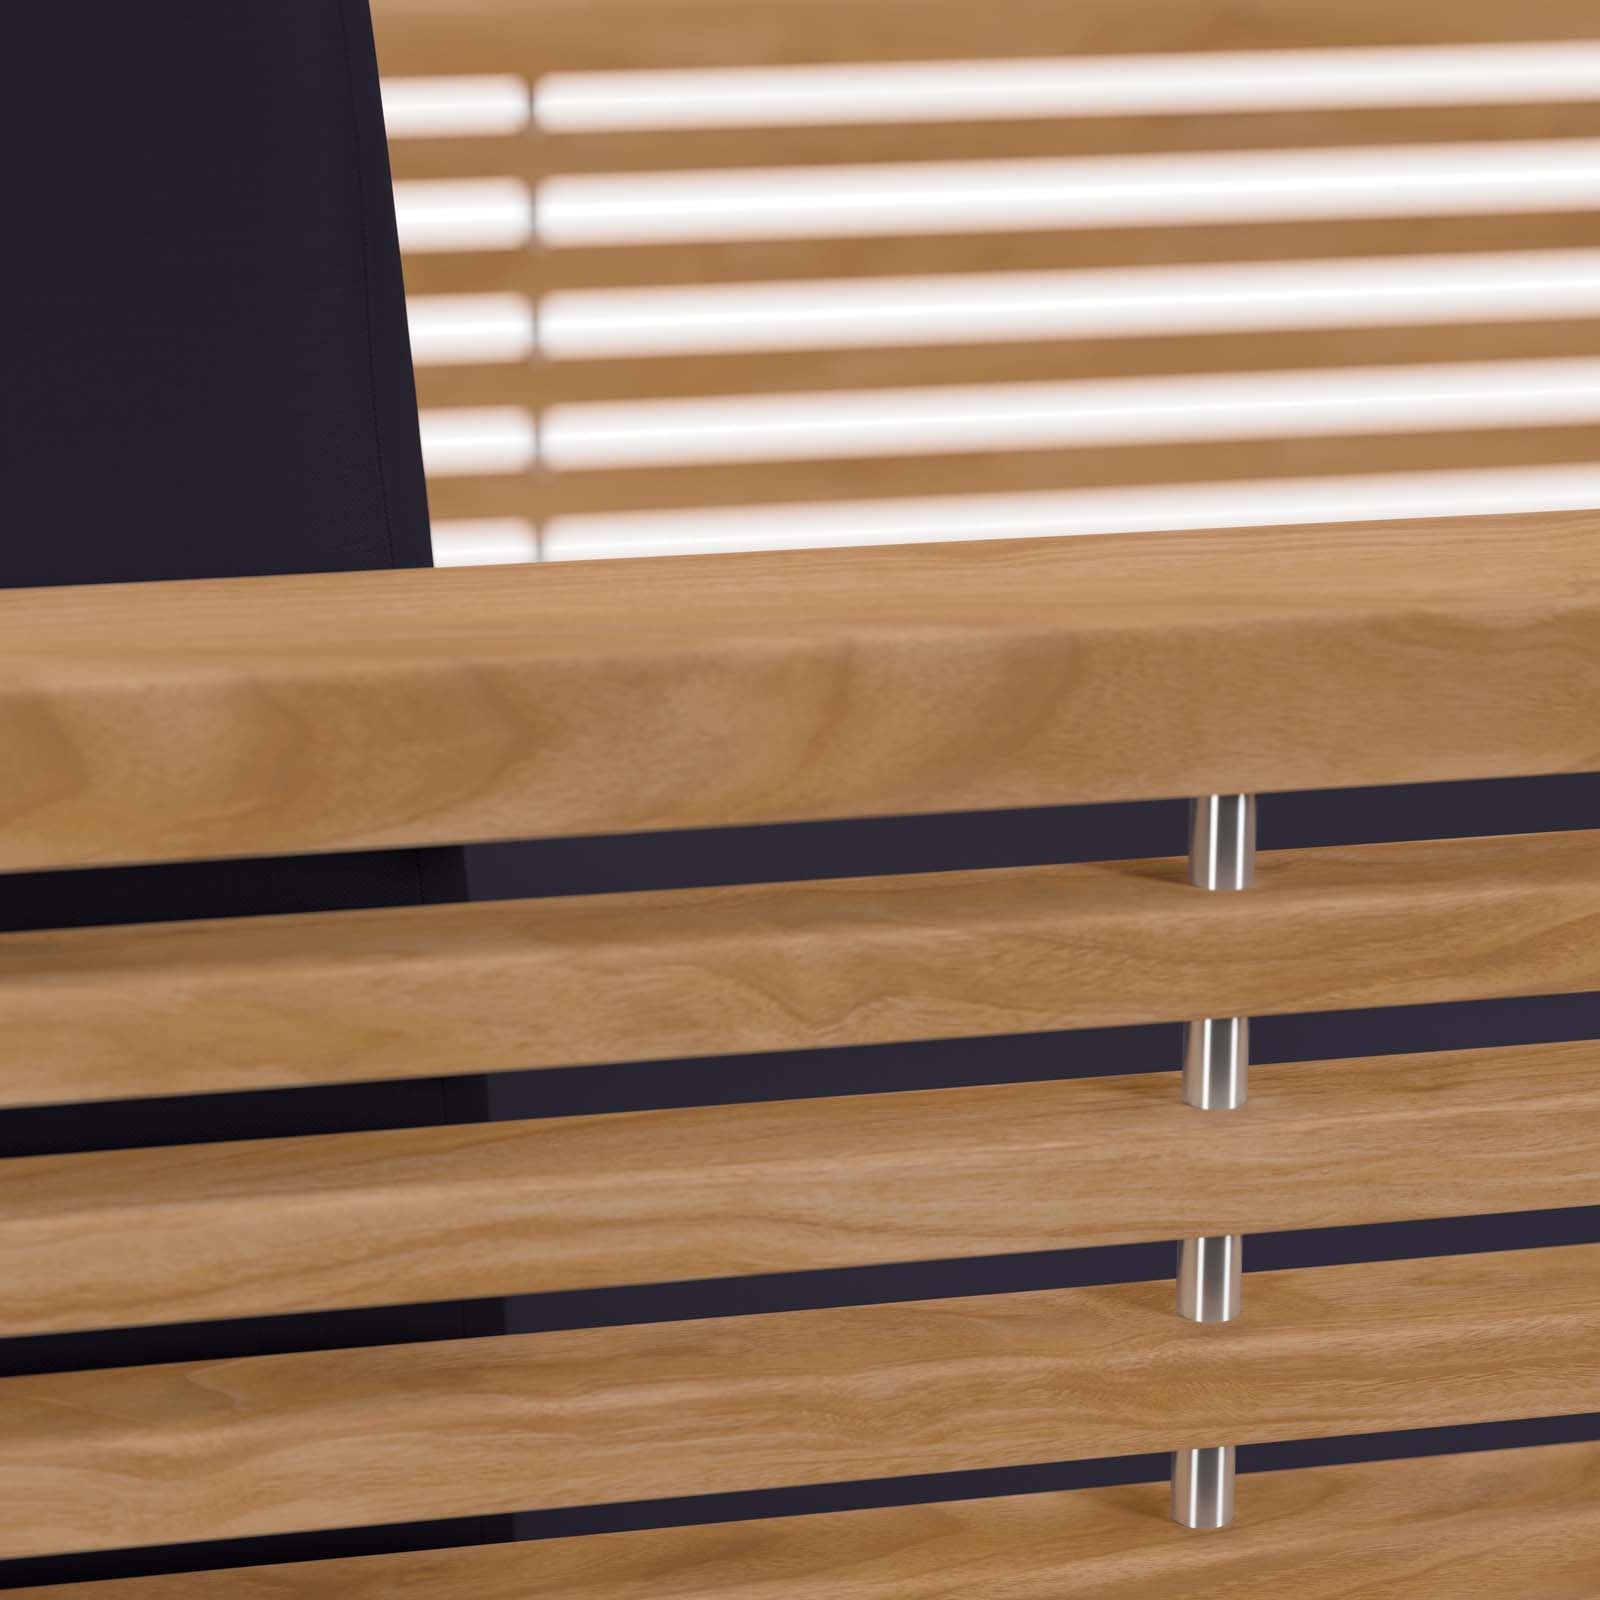 Modway - Carlsbad 6-Piece Teak Wood Outdoor Patio Outdoor Patio Set - EEI-5836